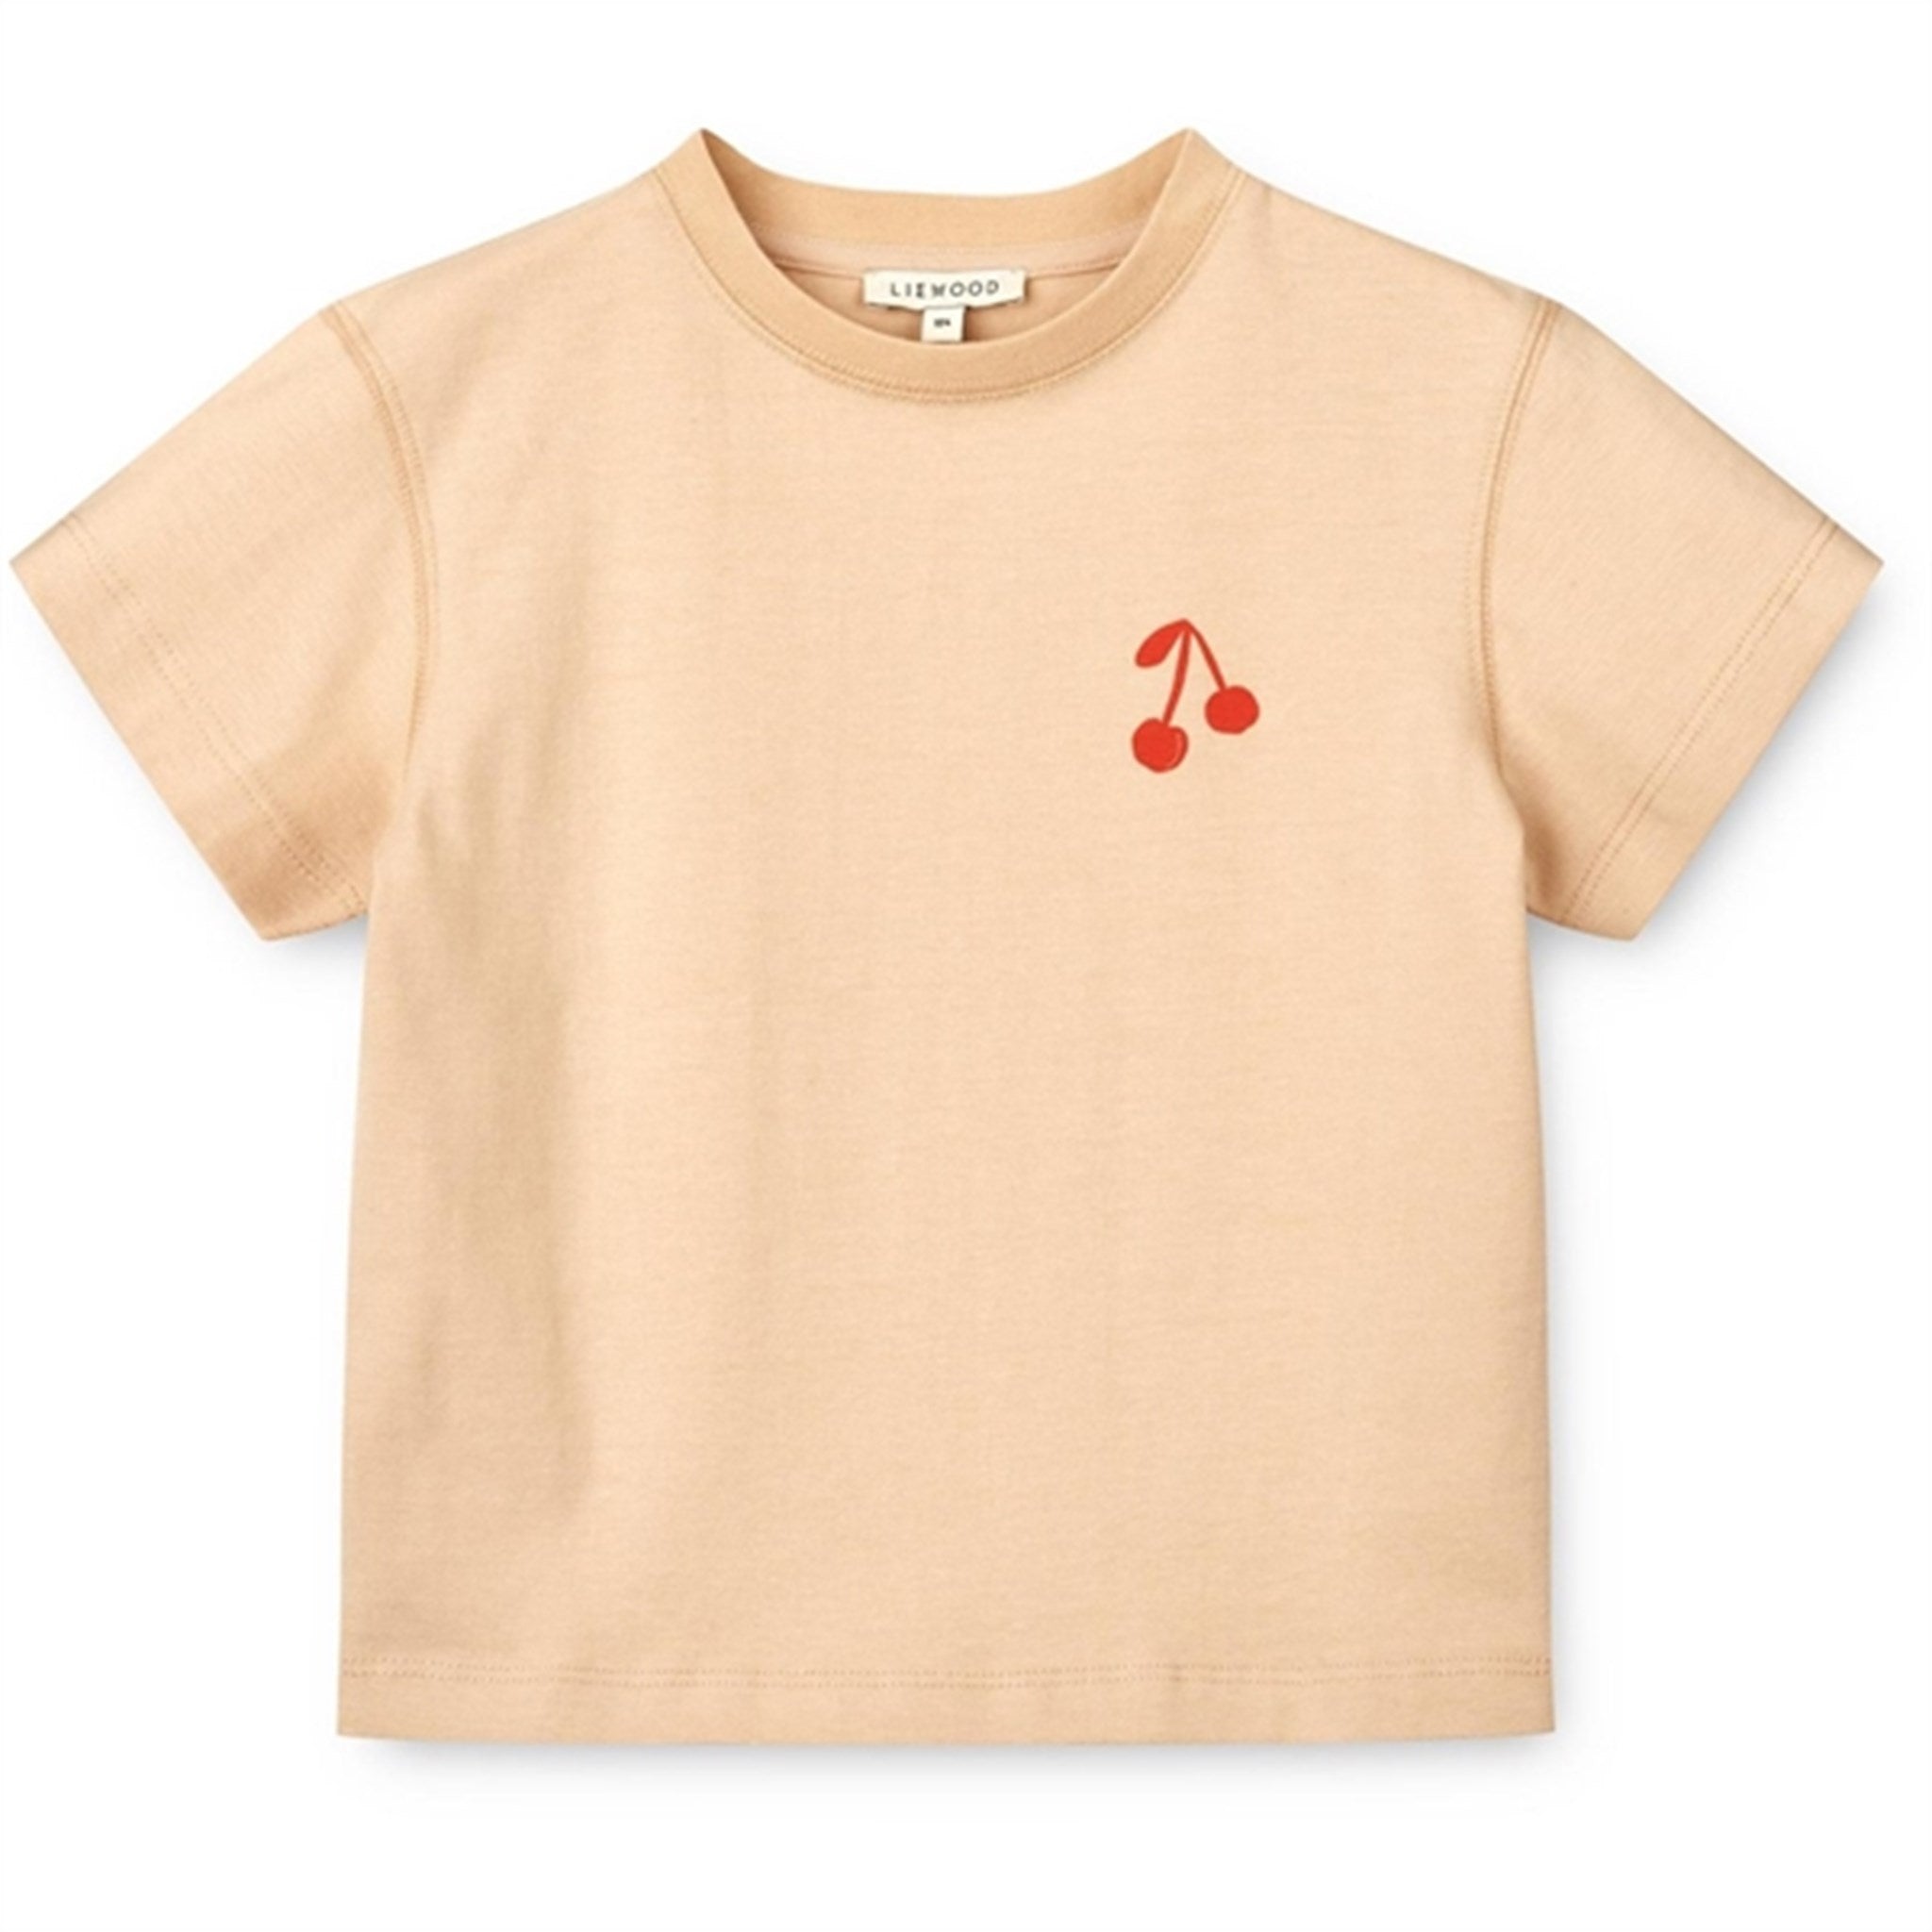 Liewood Cherries/Apple Blossom Sixten Placement T-shirt